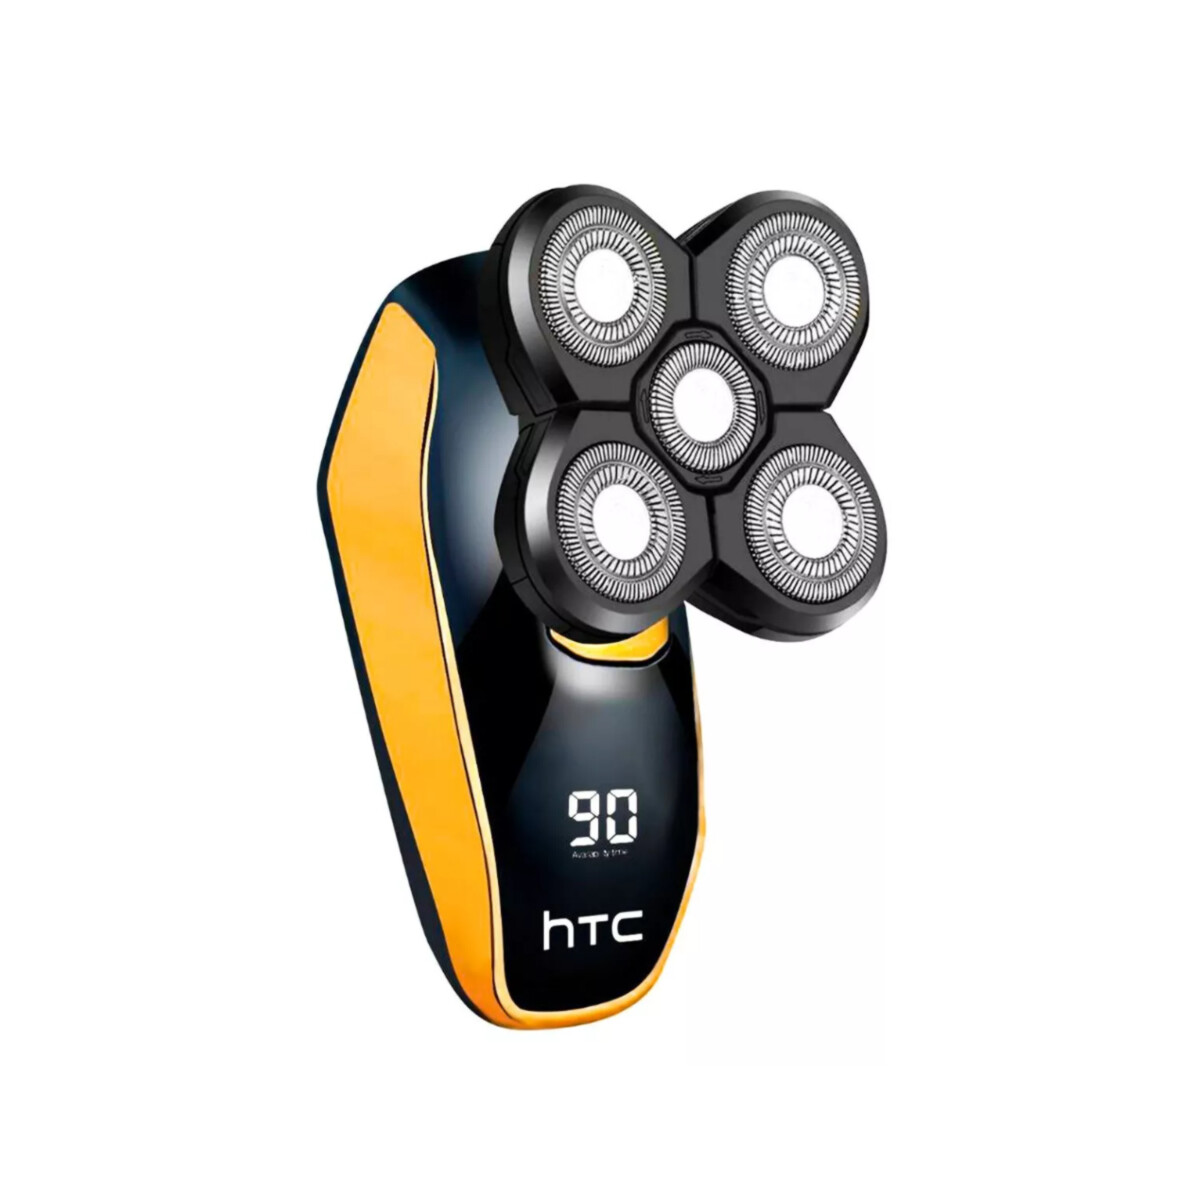 Rasuradora HTC GT 623 Recargable Inalambrica 